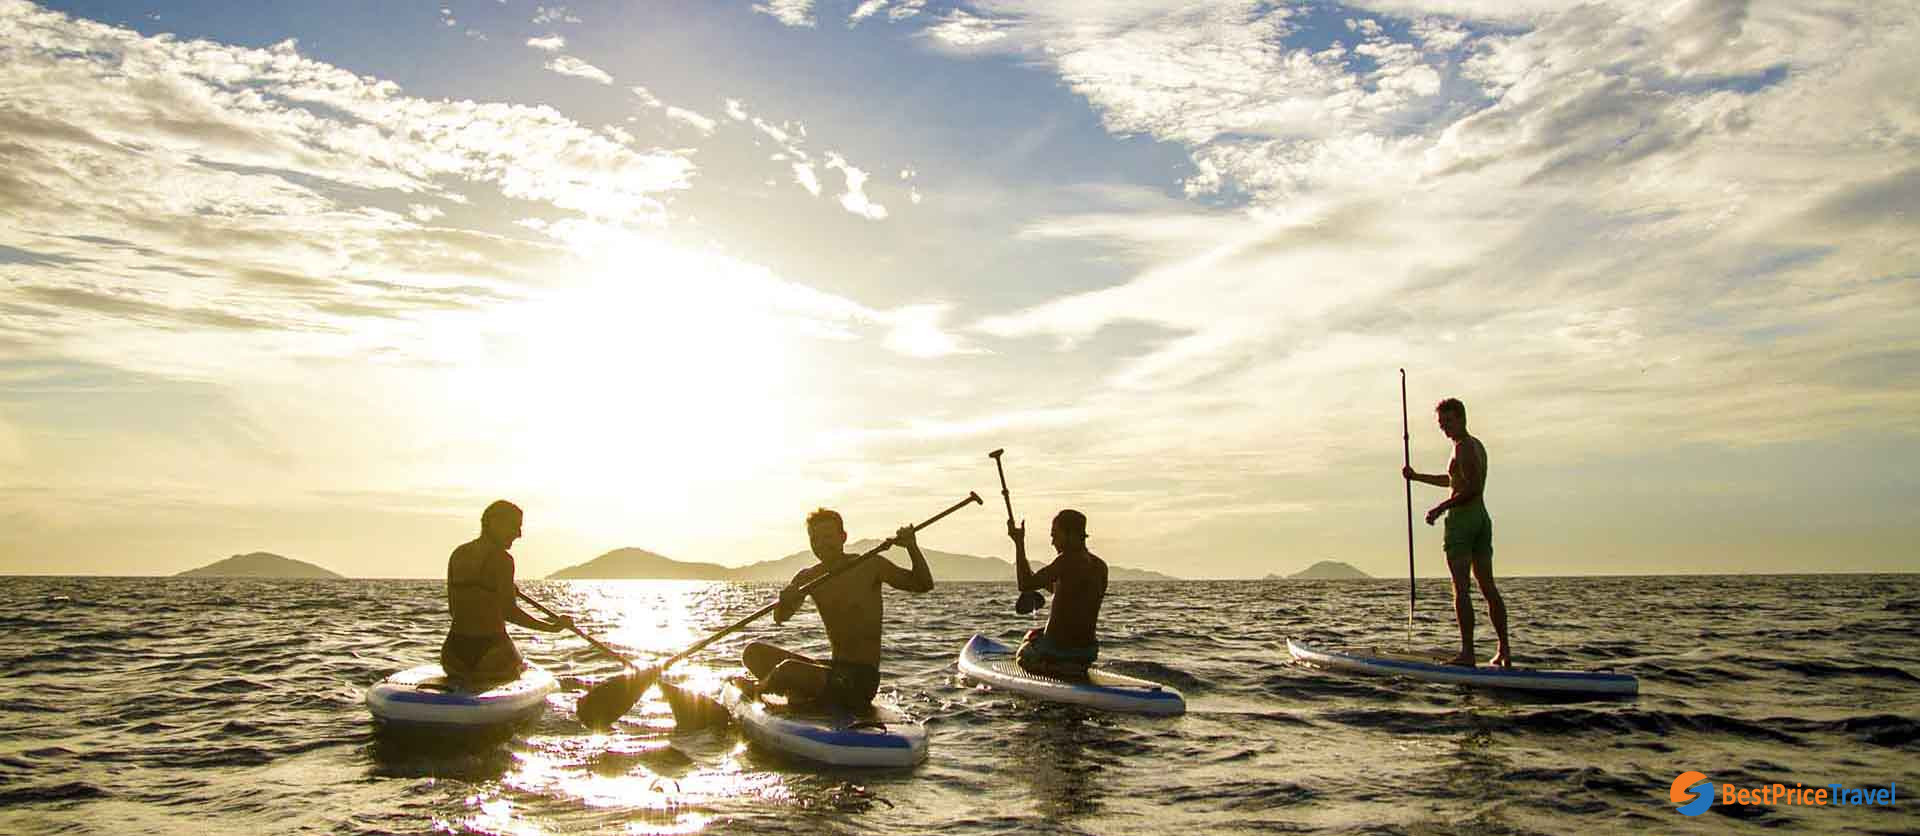 Vietnam adventure activities - stand-up paddling in Vietnam